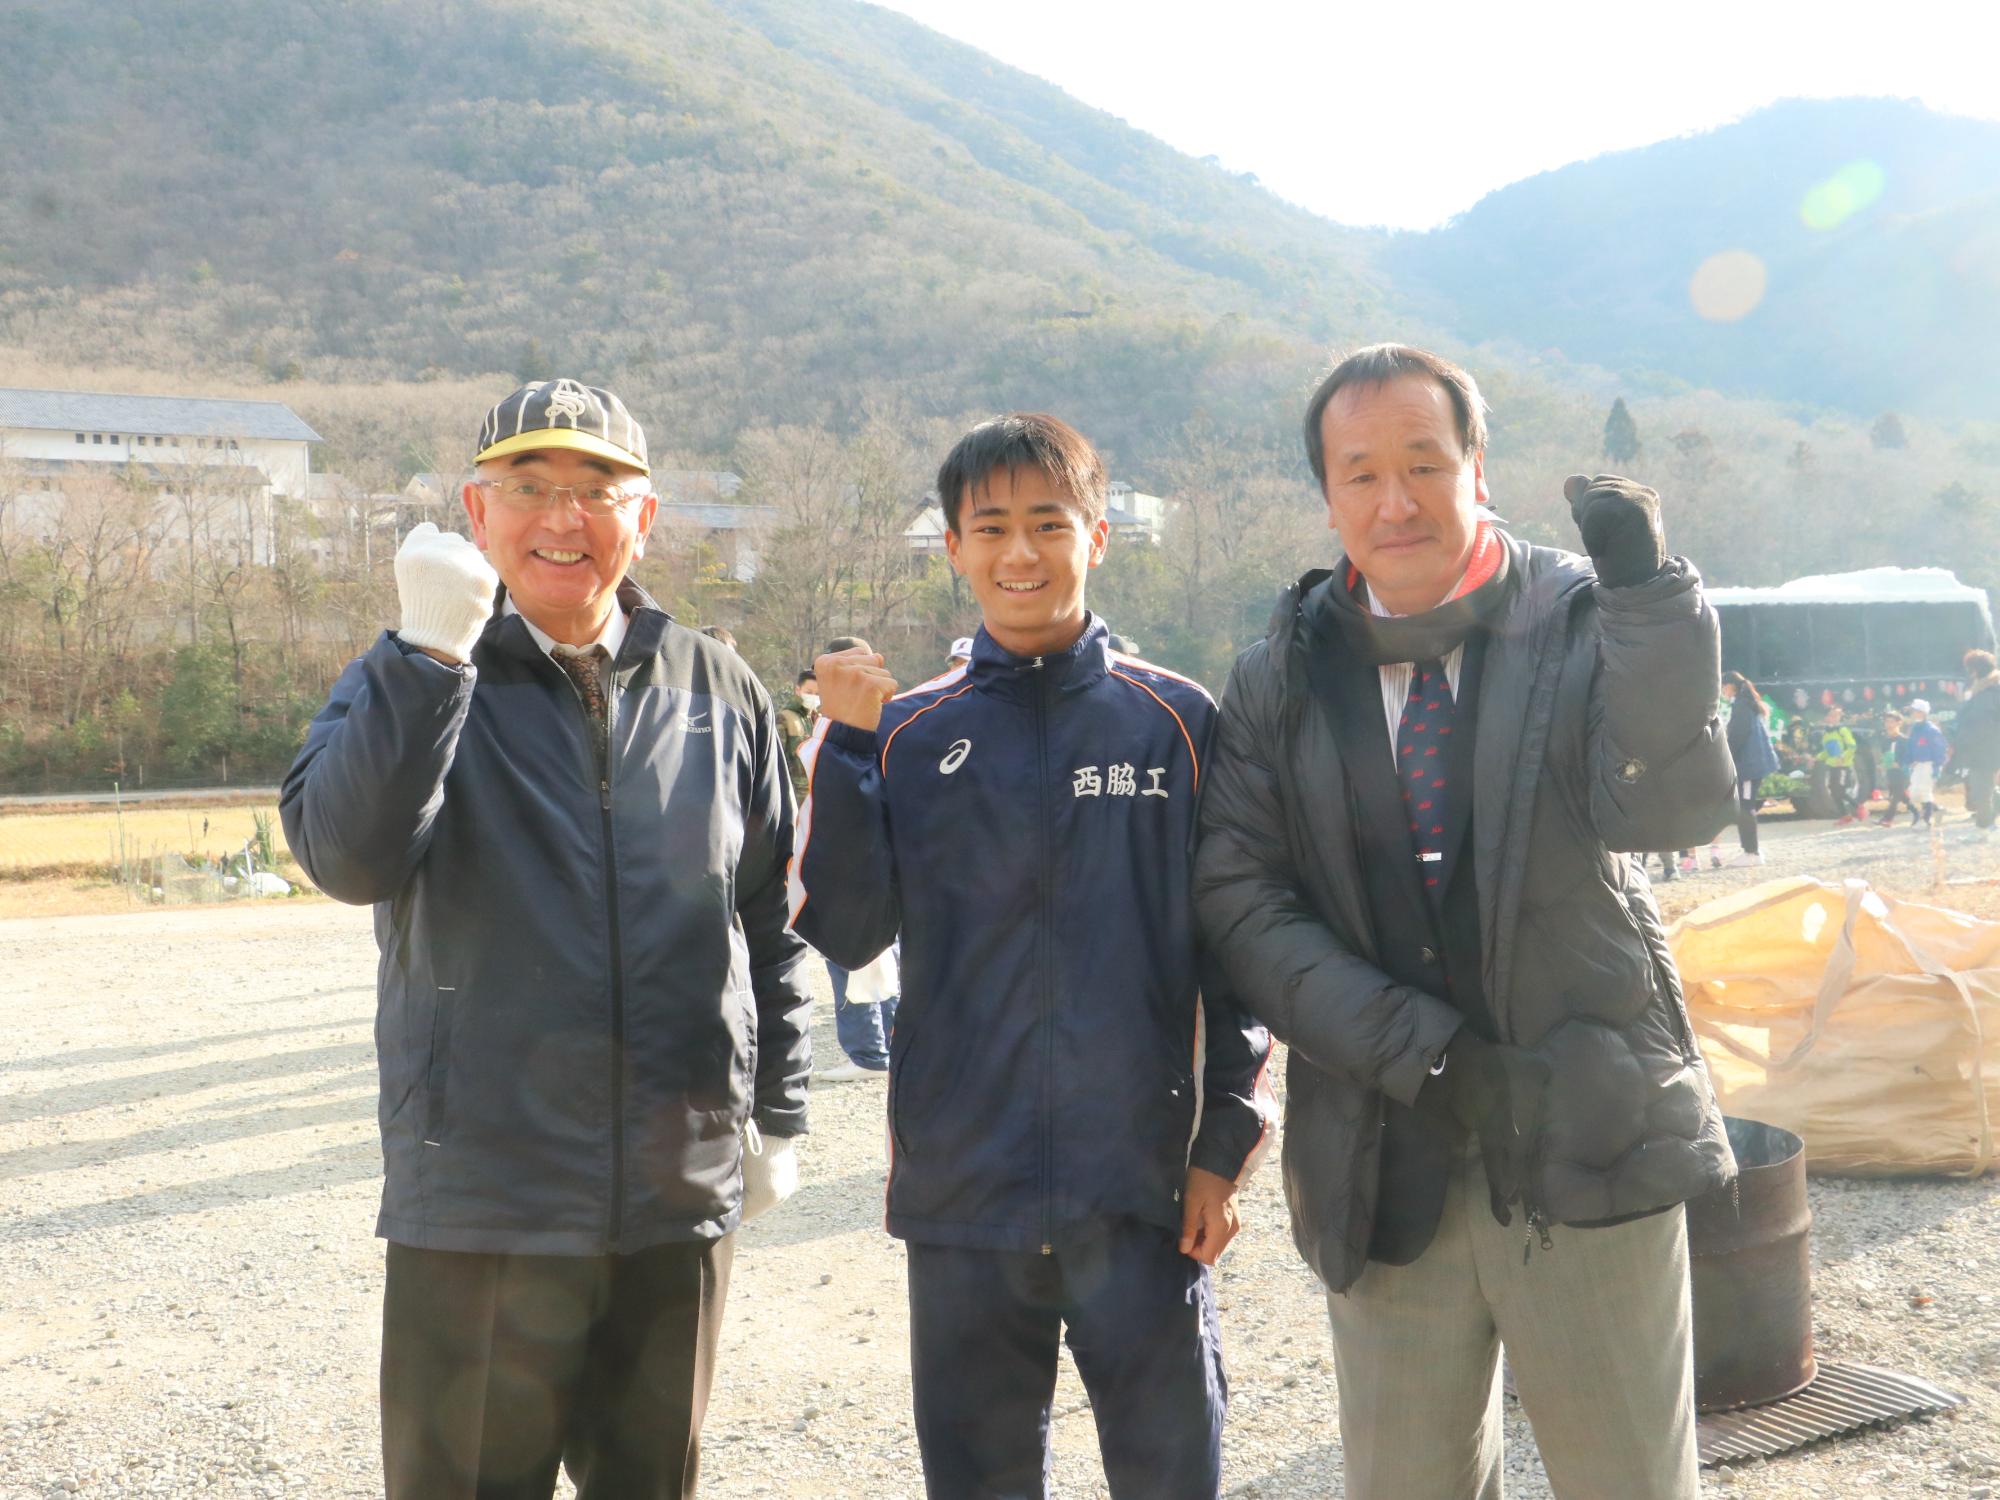 昨年の今田元旦マラソンの時に撮った、市長と小田選手と足立監督のスリーショット。